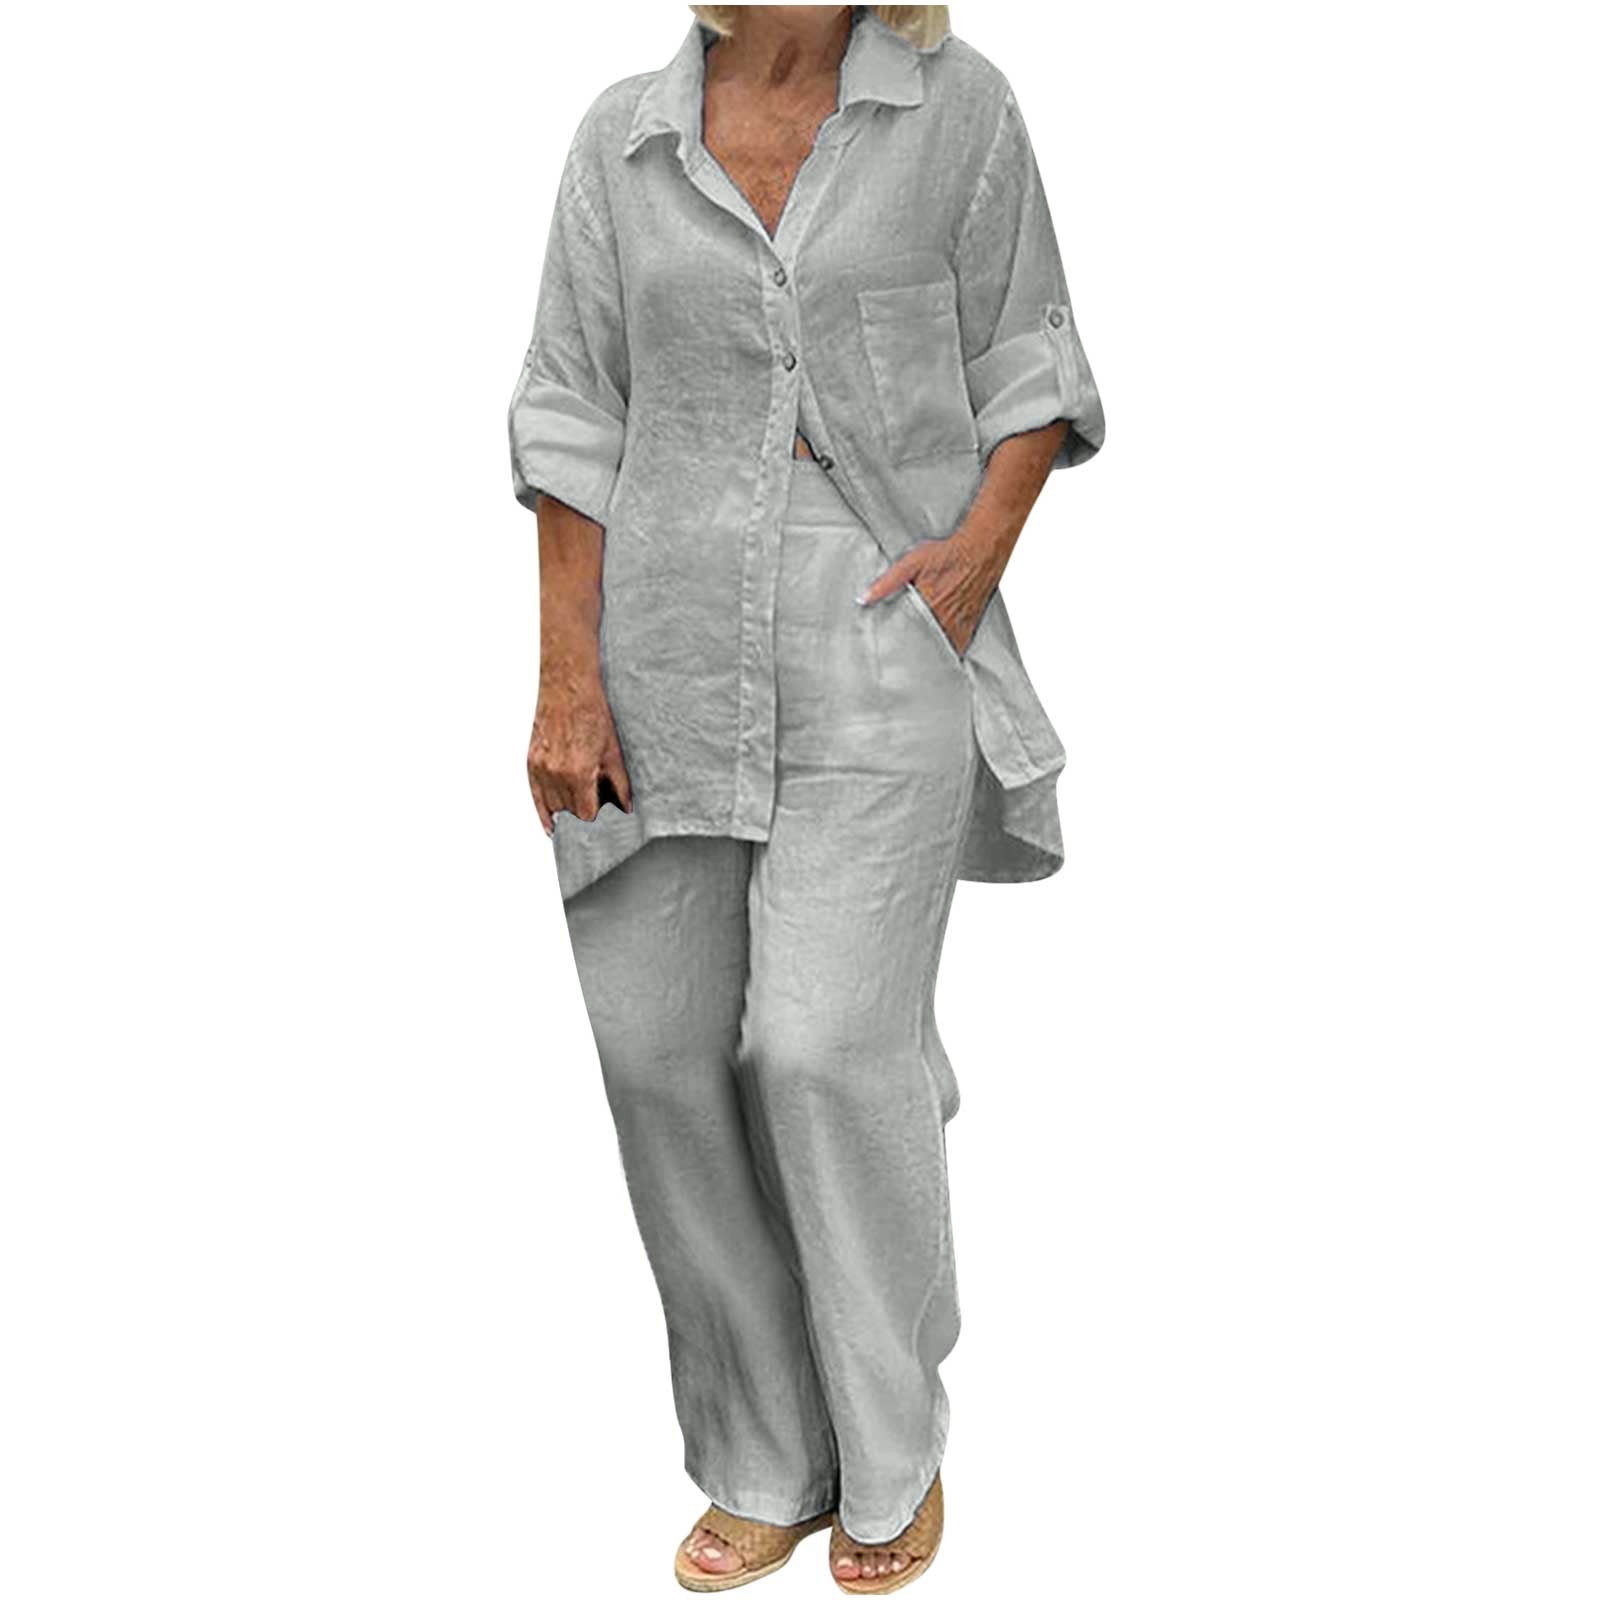 2 Piece Linen Outfits for Women Sale,Summer Cotton Linen Sets Ladies ...